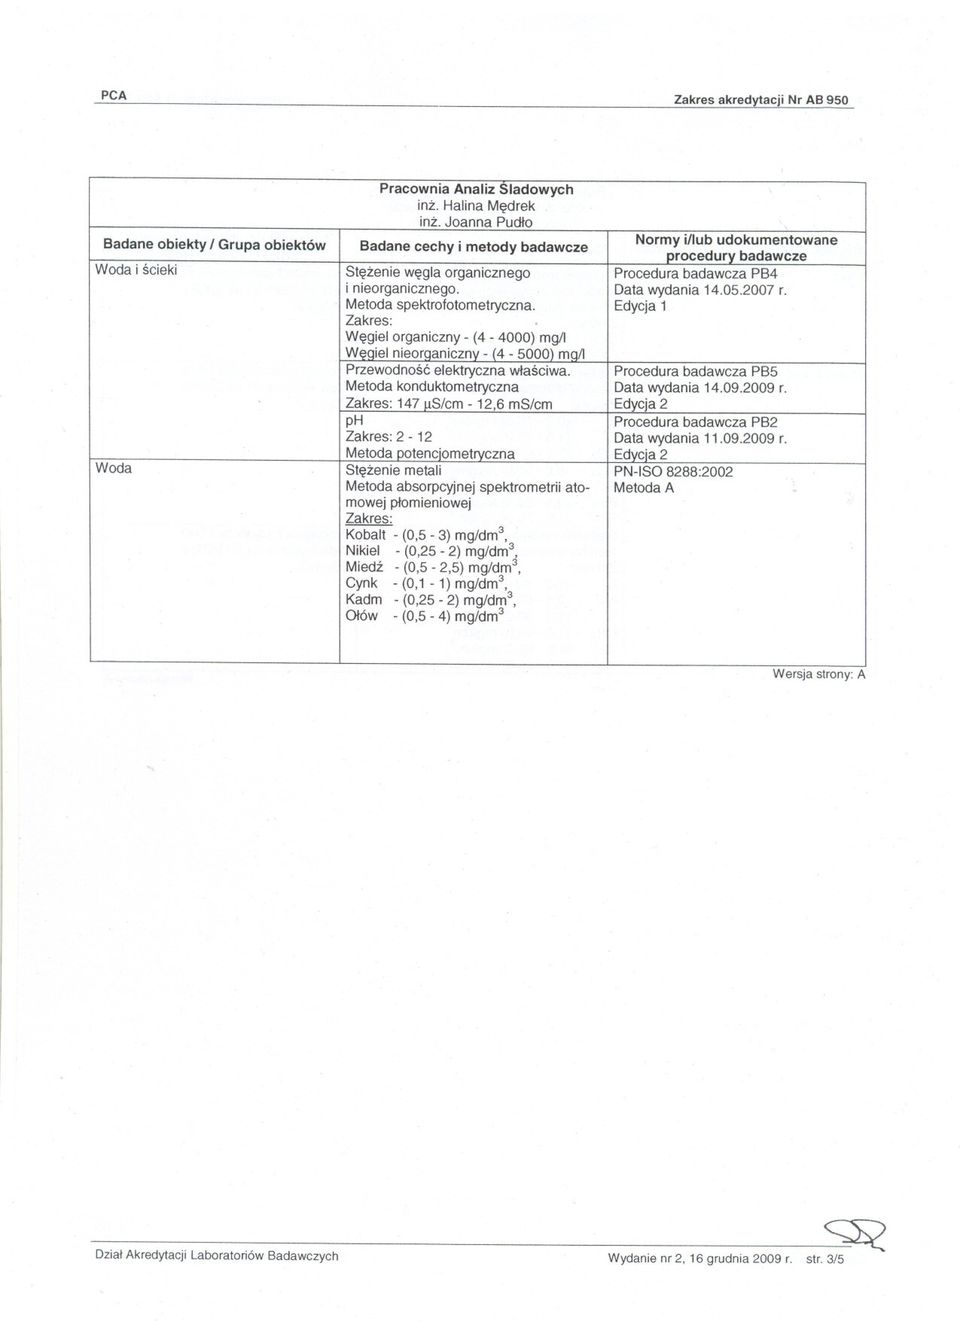 Procedura badawcza PB5 Metoda konduktometryczna Data wydania 14.09.2009 r.